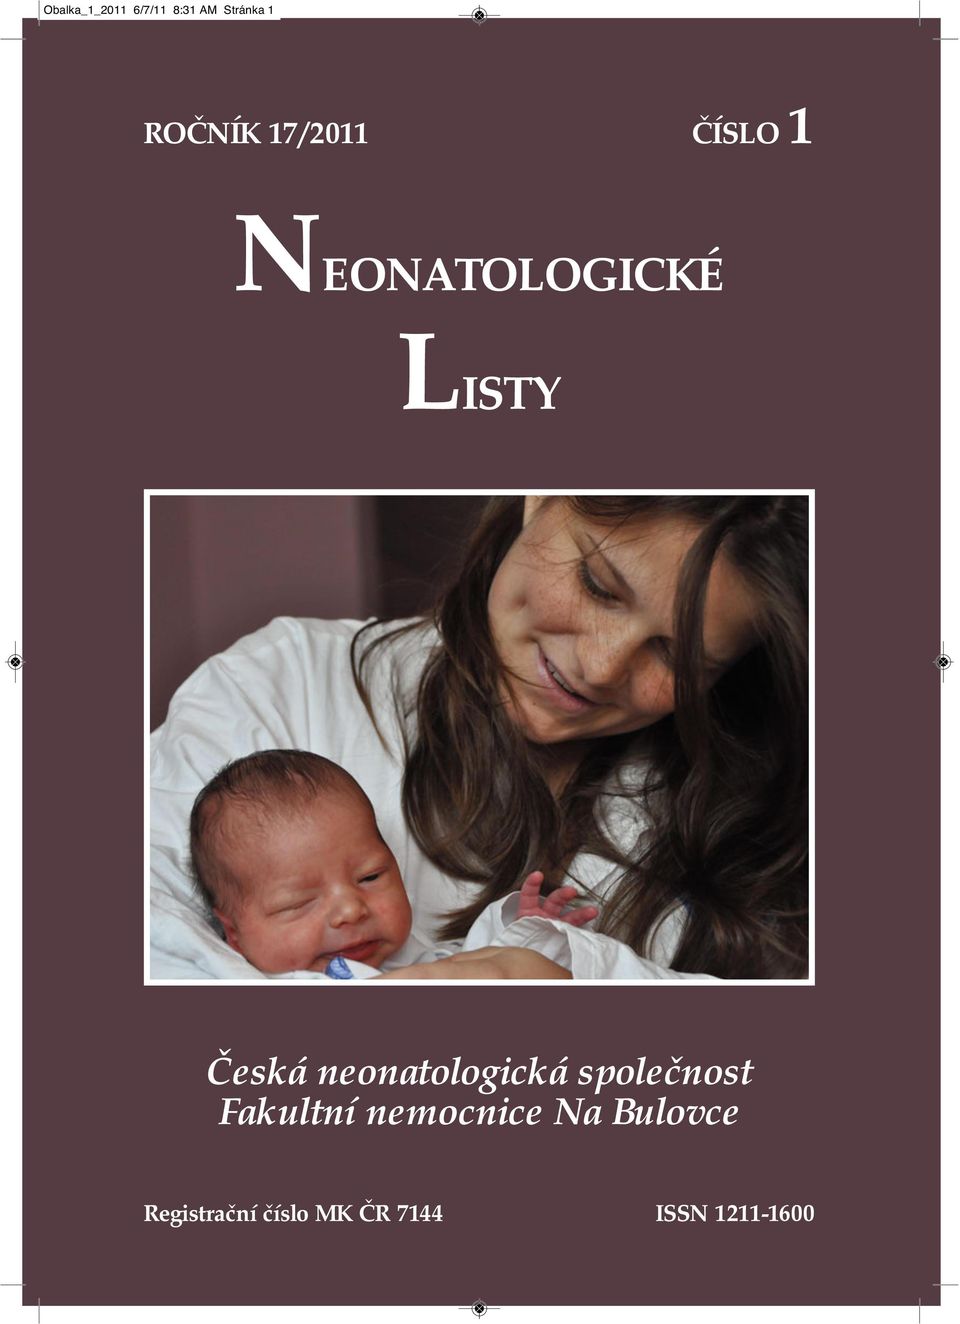 neonatologická společnost Fakultní nemocnice